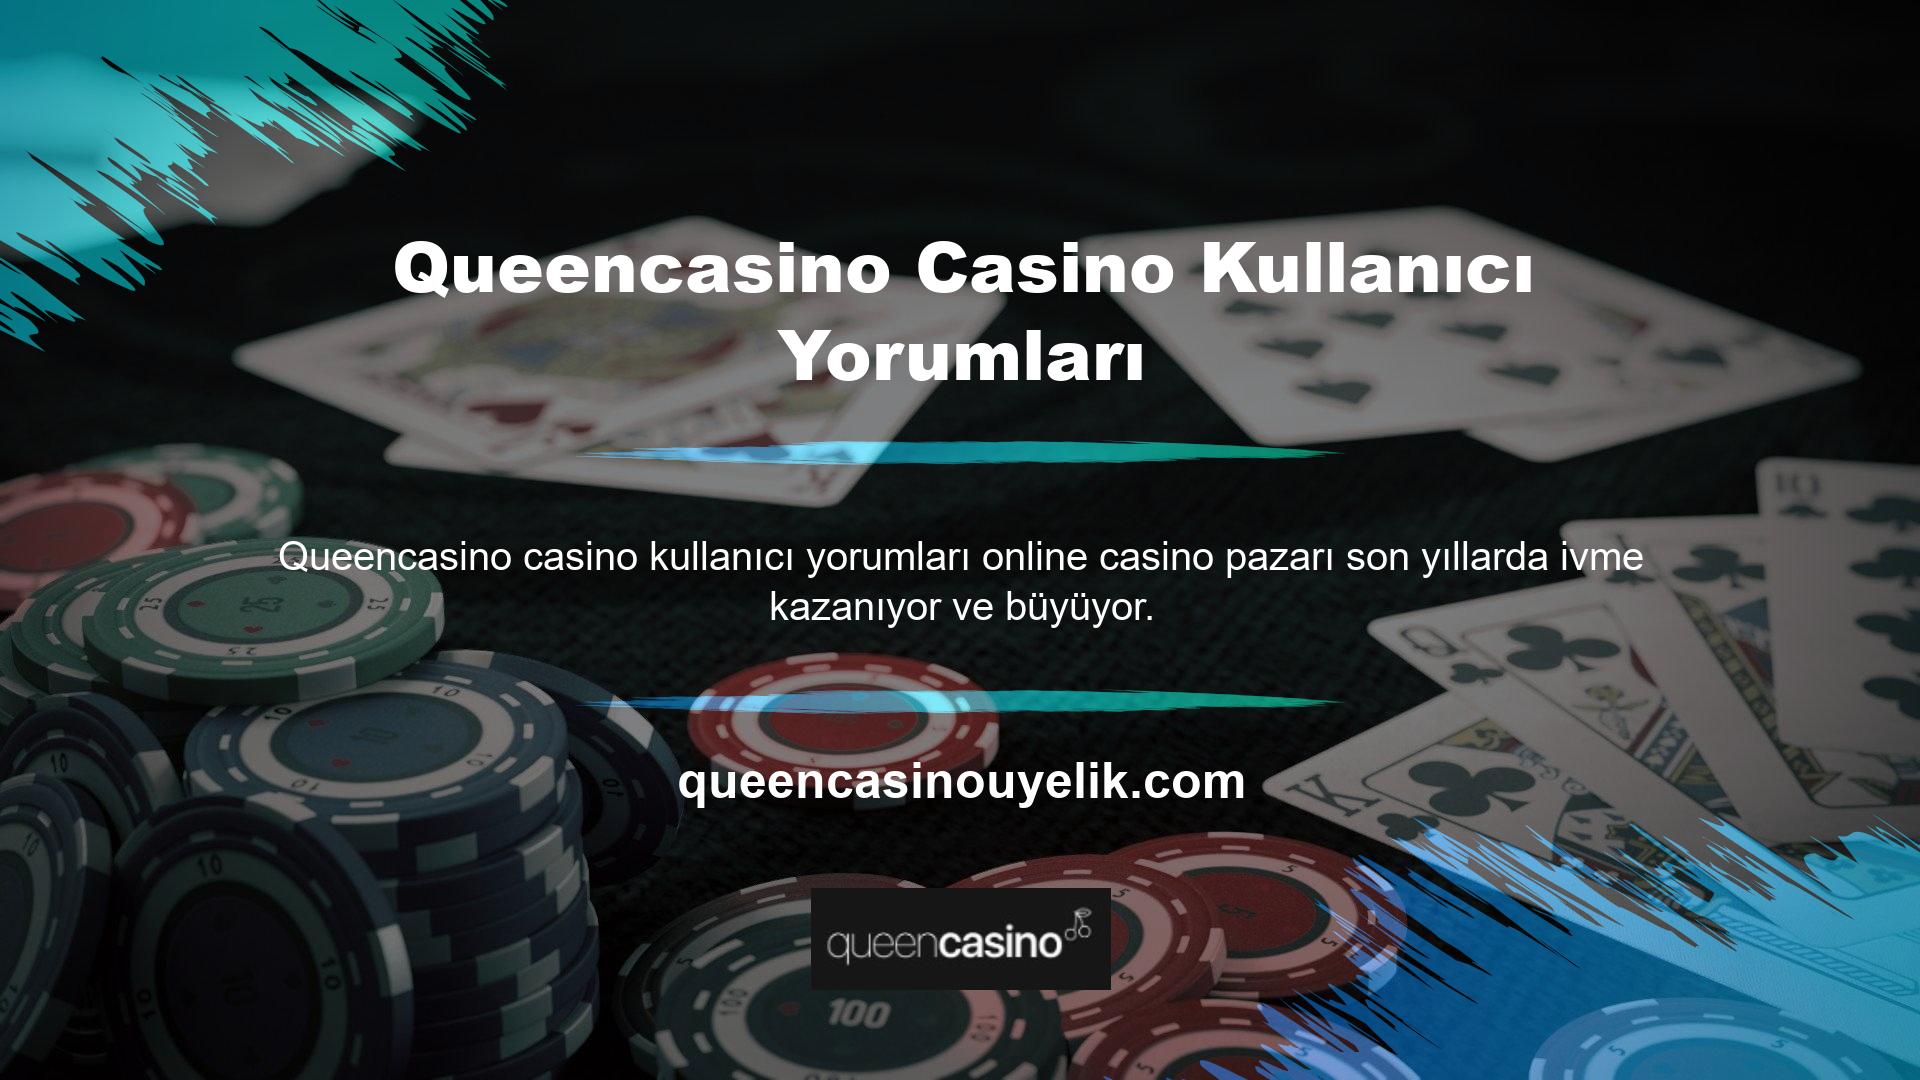 Bu hızlanma, Casino teknolojisinin tüm ağ kanallarındaki gelişimini yansıtıyor ve özellikle büyük Casino oyun istasyonlarından biri olan Kıbrıs’ ı etkiliyor